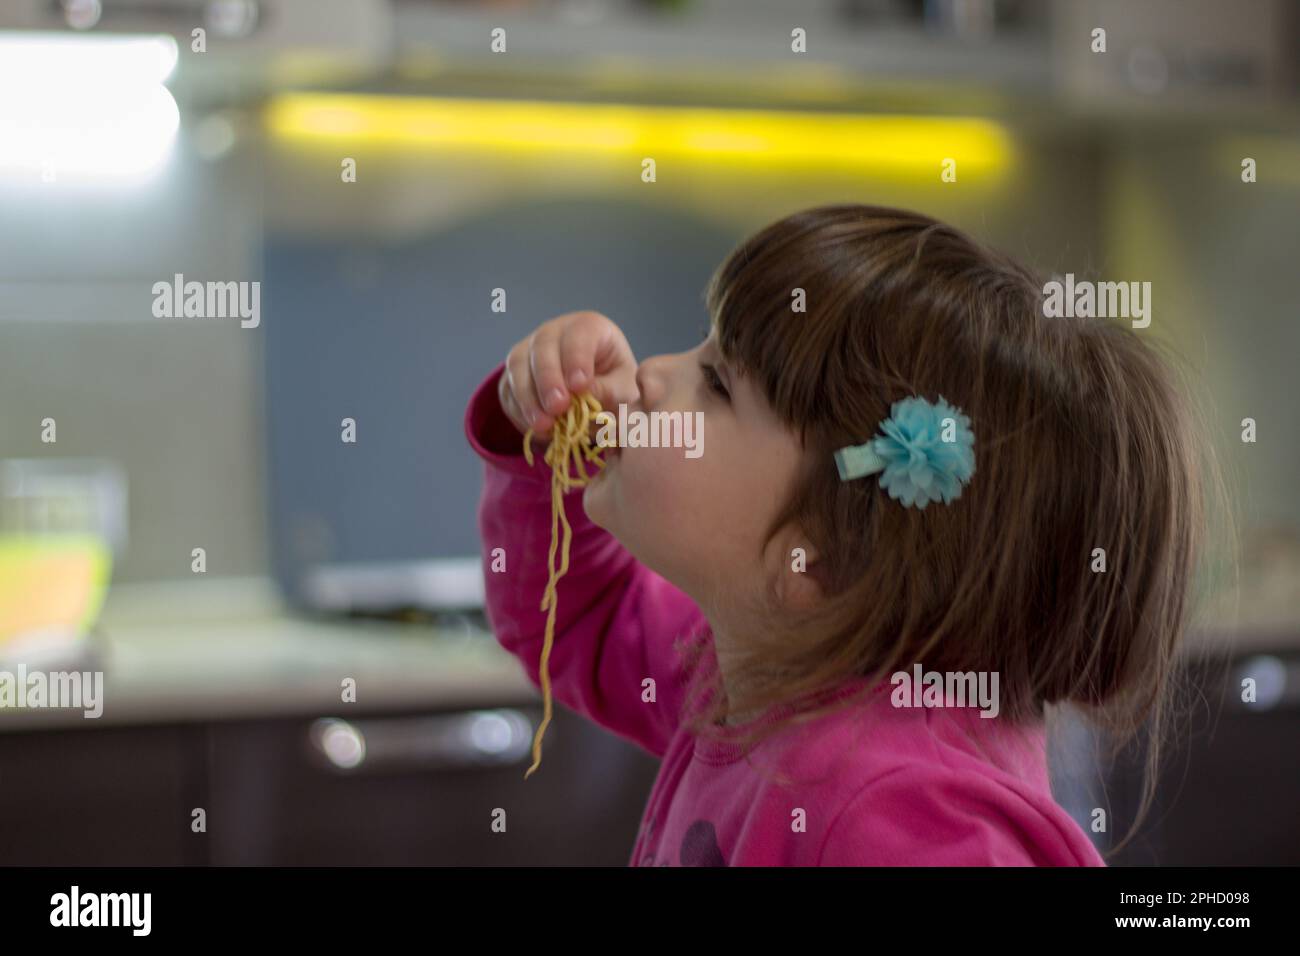 Imagen de una adorable niña morena comiendo espaguetis con sus manos. Foto de stock